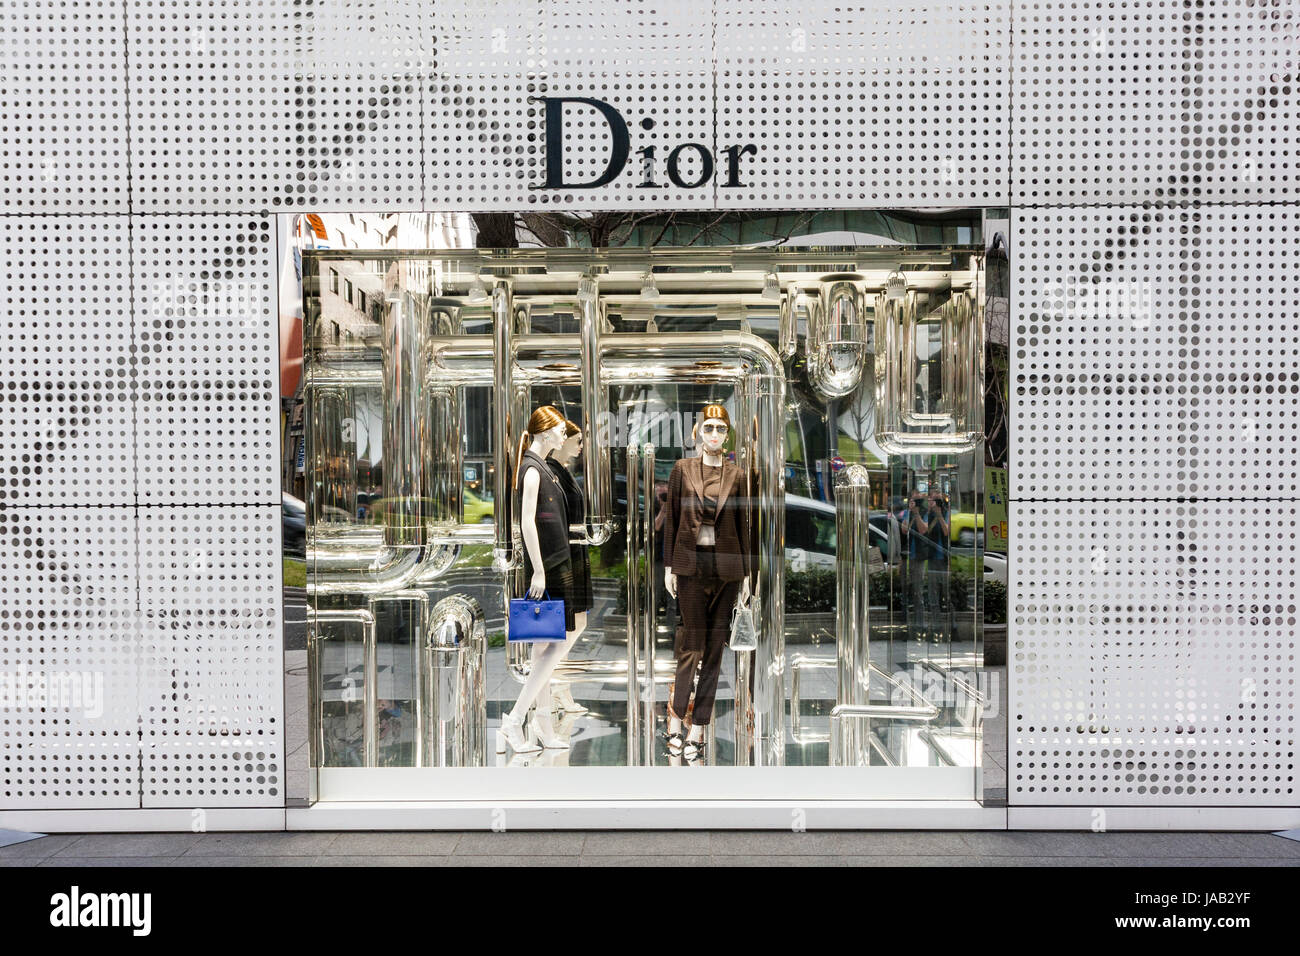 Japon, Osaka Shinsaibashi,. Dior fashion store shop avec fenêtre d'affichage robe gris entouré de mur à carreaux, grill avec nom au-dessus de la fenêtre. Banque D'Images